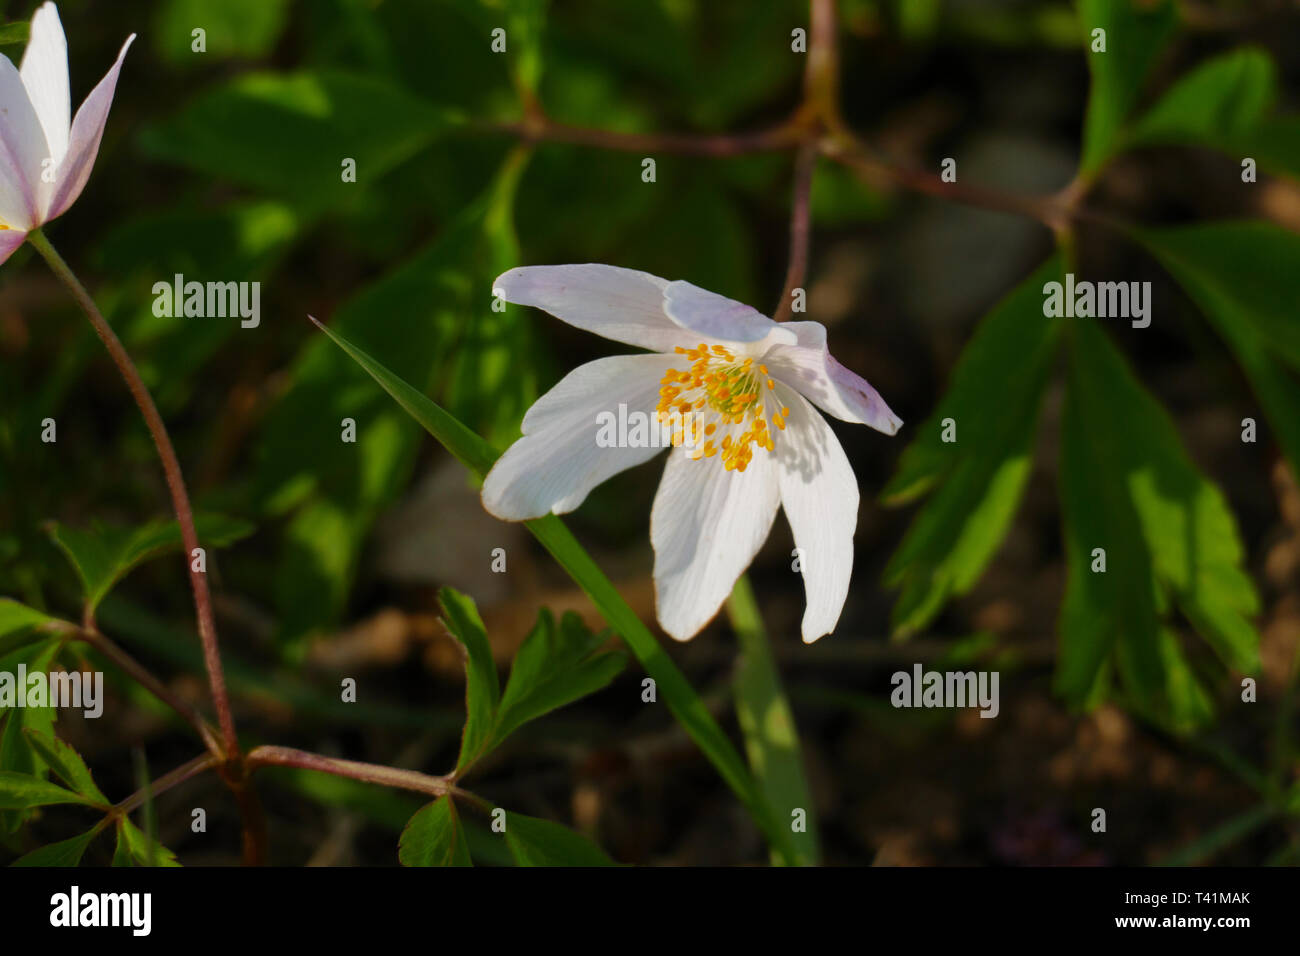 Anemone Pflanze, mit weißen Blüten an feuchtem  Waldboden Stock Photo